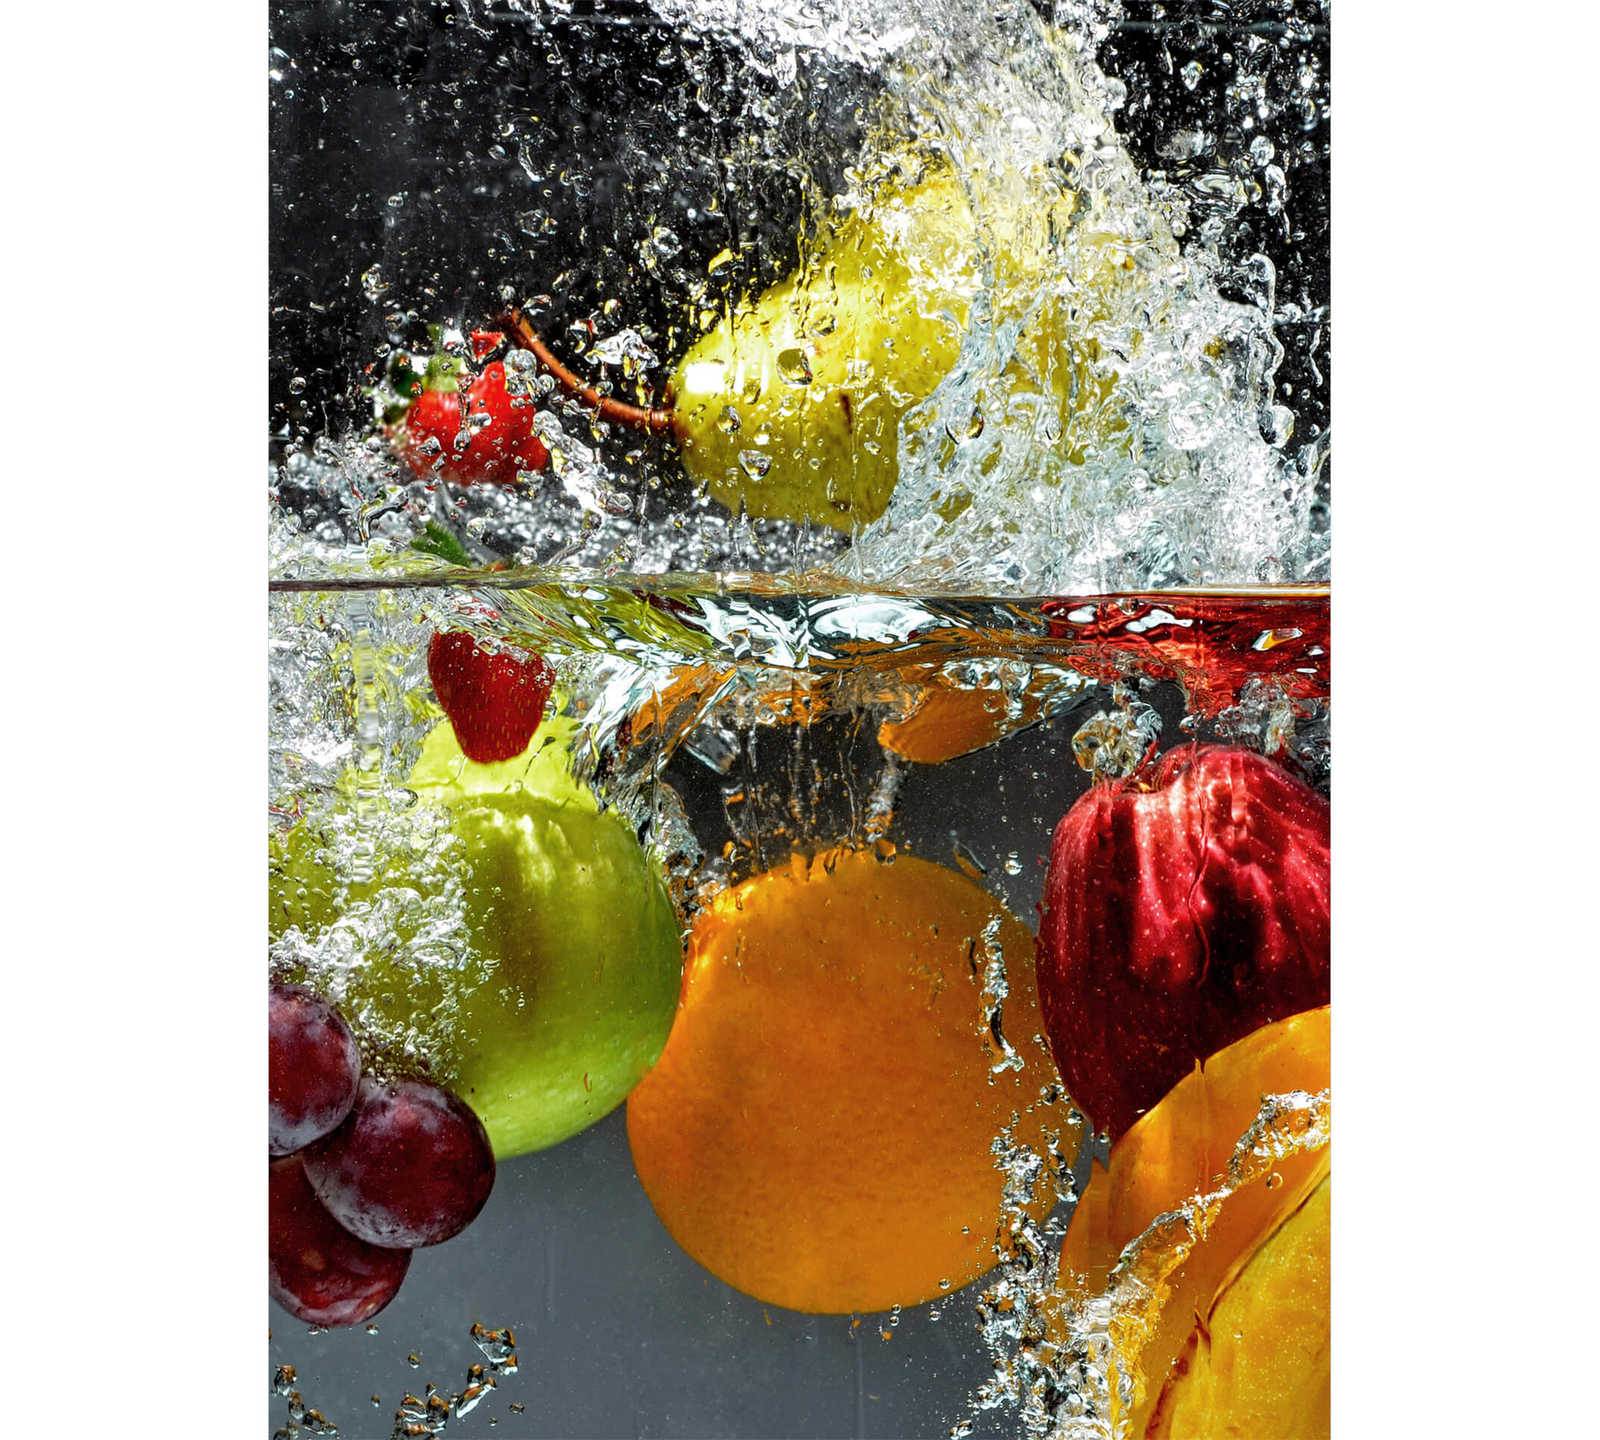         Fototapete Obst im Wasser, Hochformat – Bunt, Gelb, Rot
    